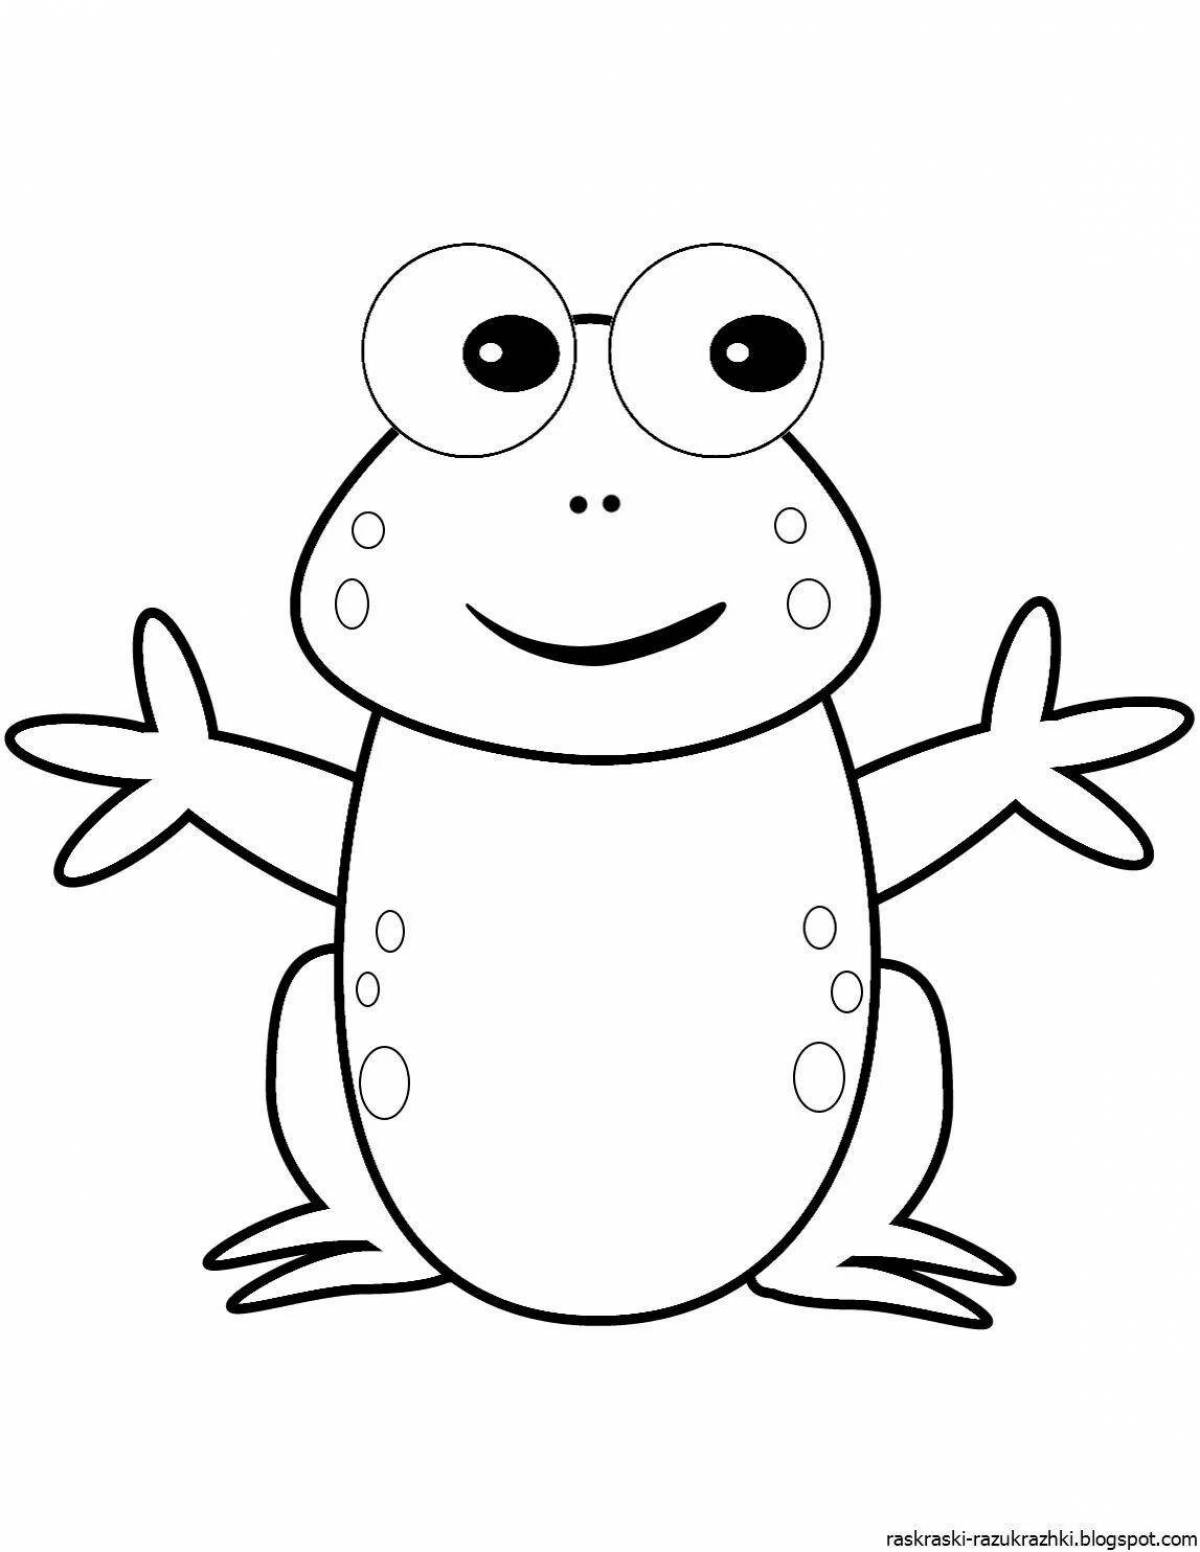 Забавная раскраска лягушка для детей